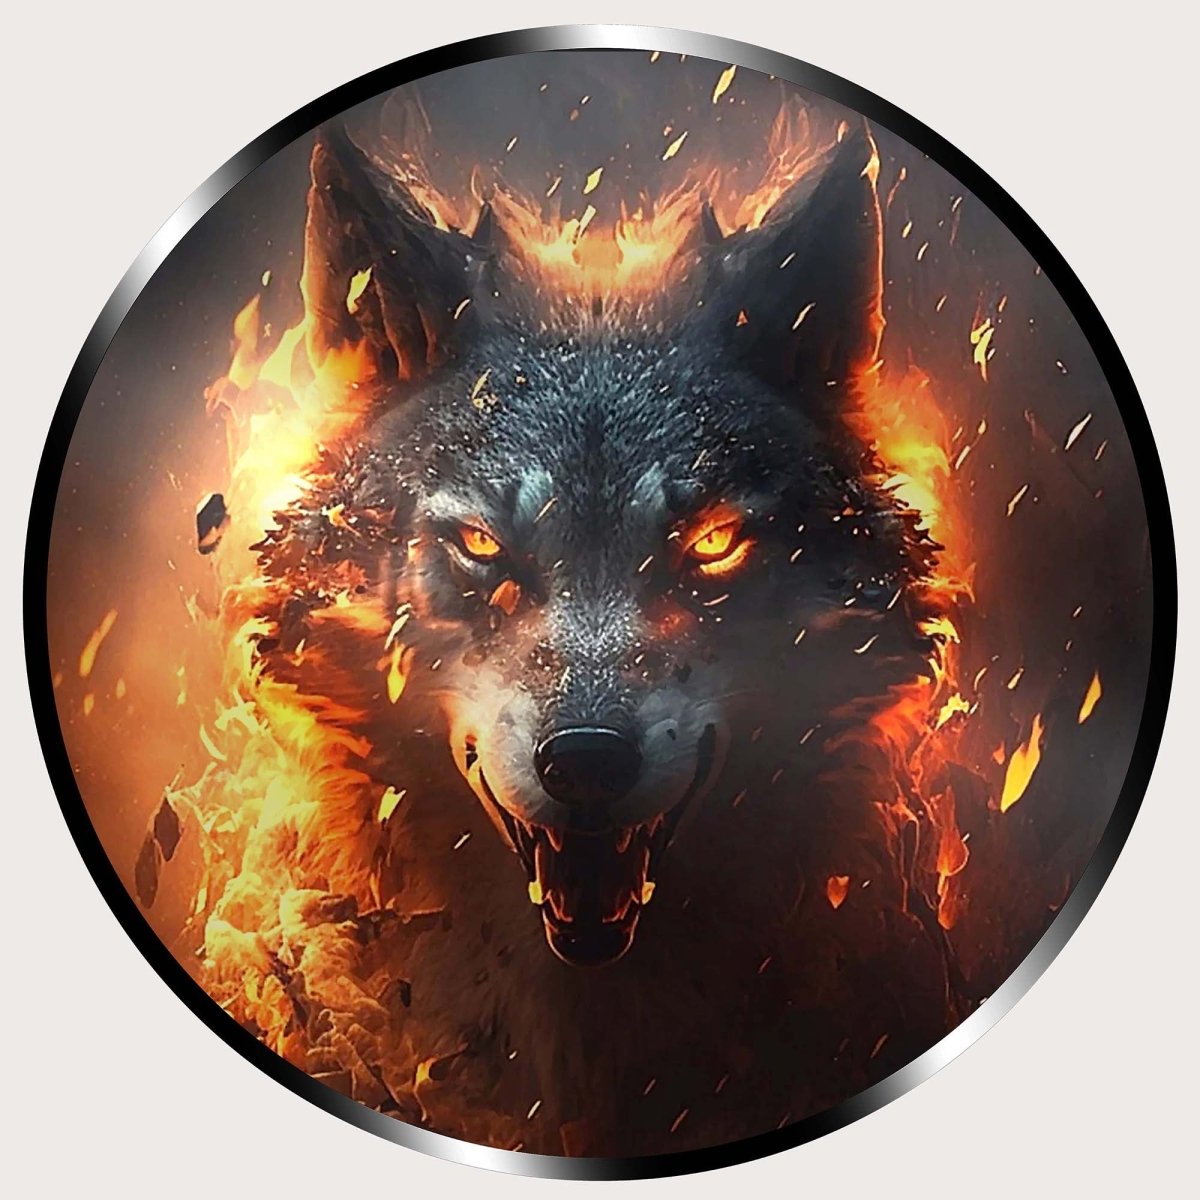 Illuminated Wall Art - Angry Fire Wolf - madaboutneon